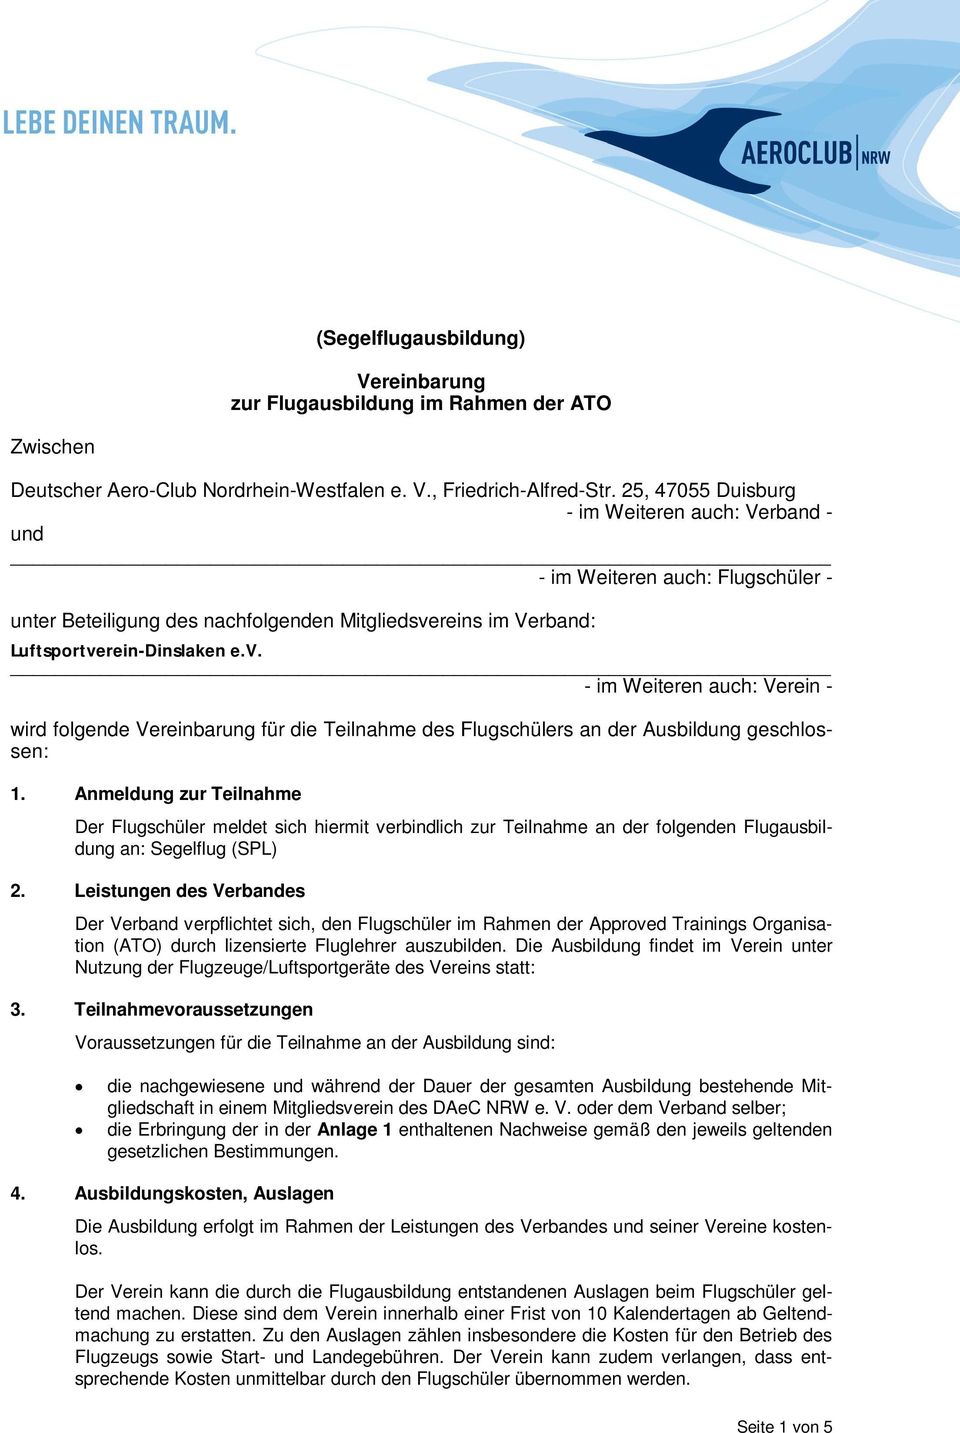 reins im Verband: Luftsportverein-Dinslaken e.v. - im Weiteren auch: Verein - wird folgende Vereinbarung für die Teilnahme des Flugschülers an der Ausbildung geschlossen: 1.